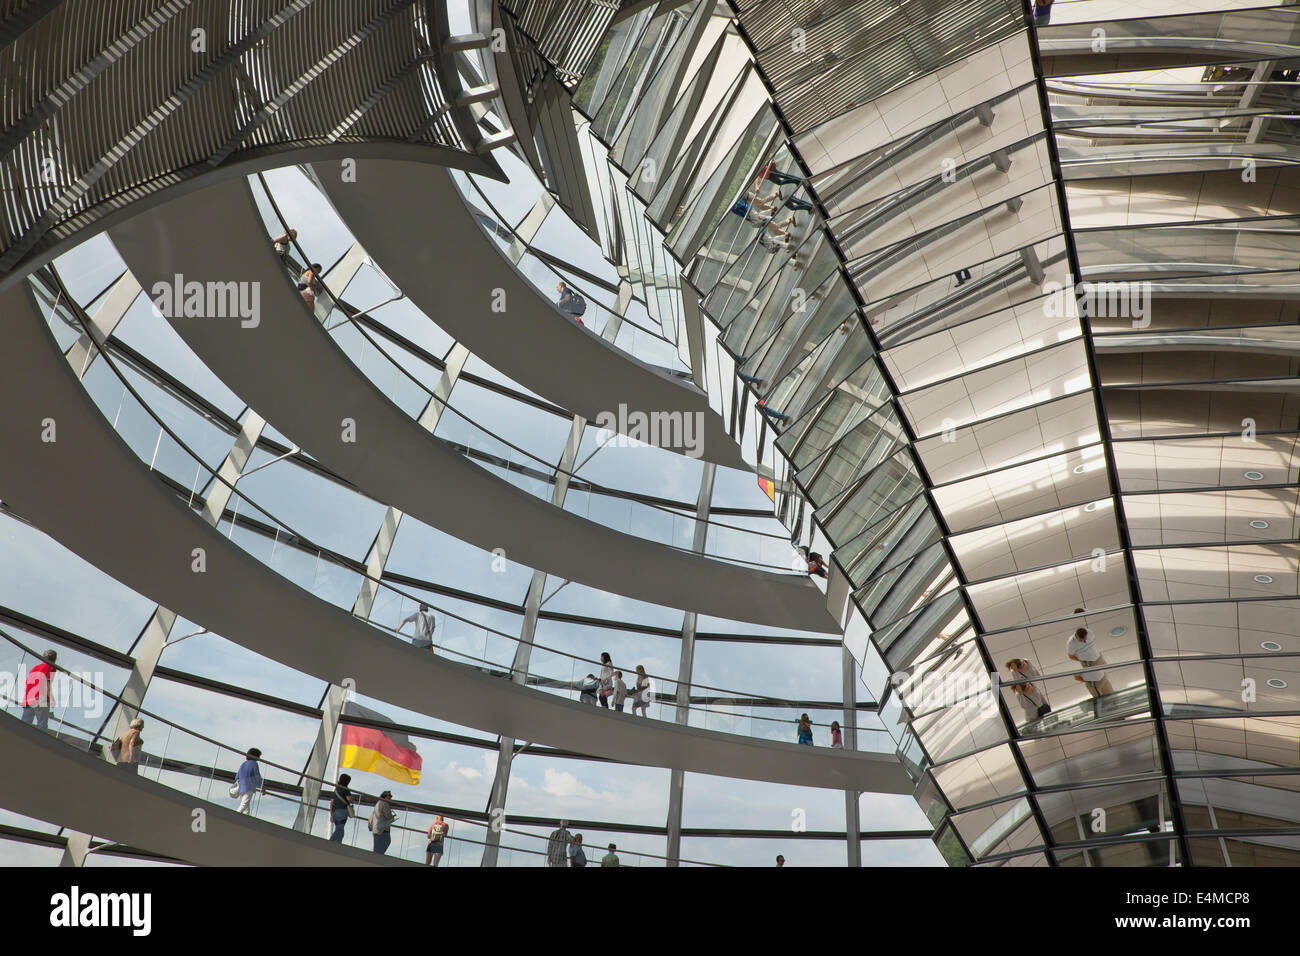 Alemania, Berlín Mitte, el edificio del Reichstag (Parlamento) con una cúpula de cristal diseñada por Norman Foster. Foto de stock